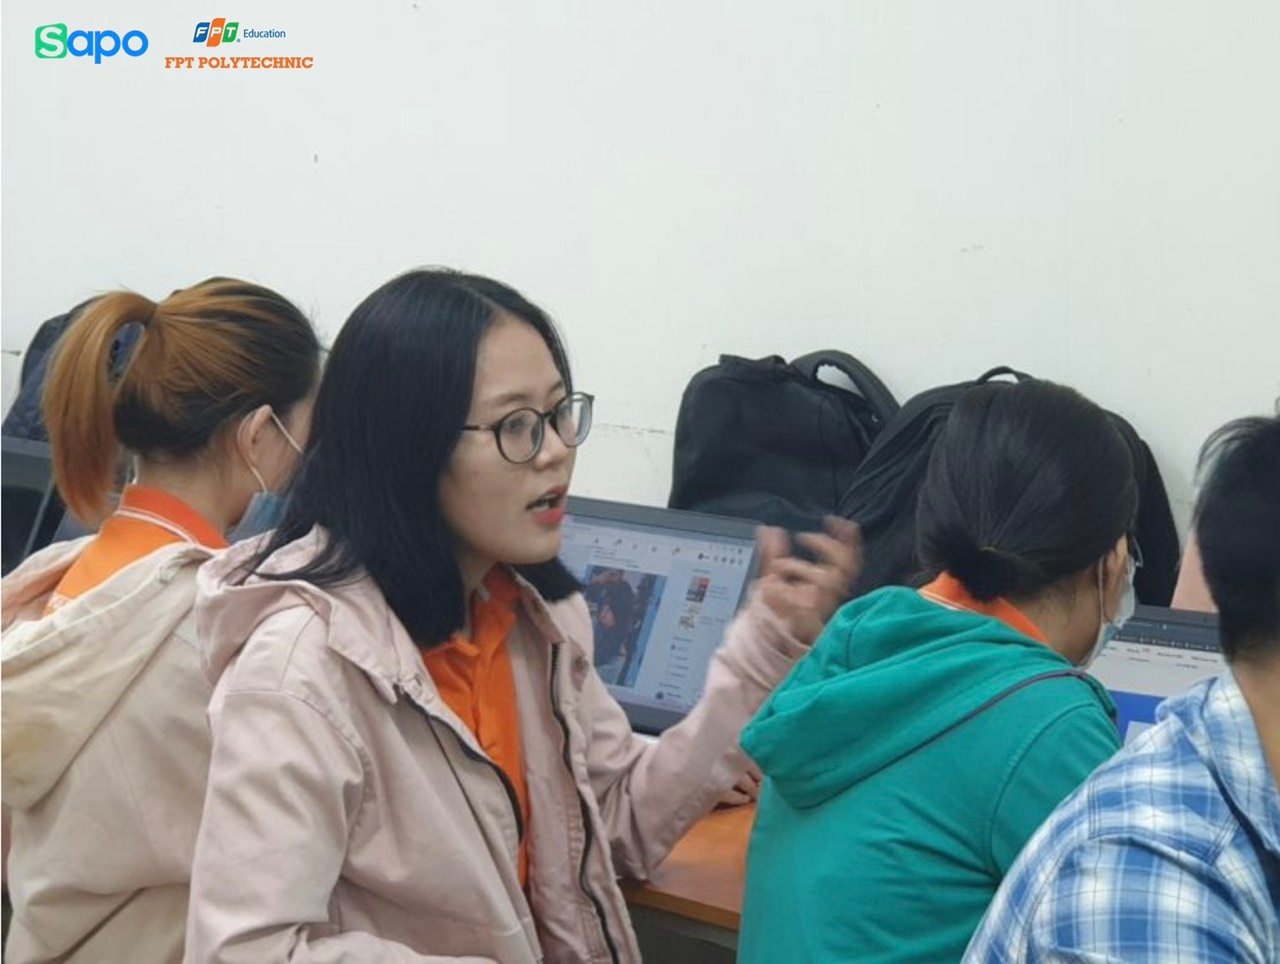 Sapo hợp tác với Cao đẳng FPT Polytechnic đào tạo cho sinh viên về kiến thức thương mại điện tử.